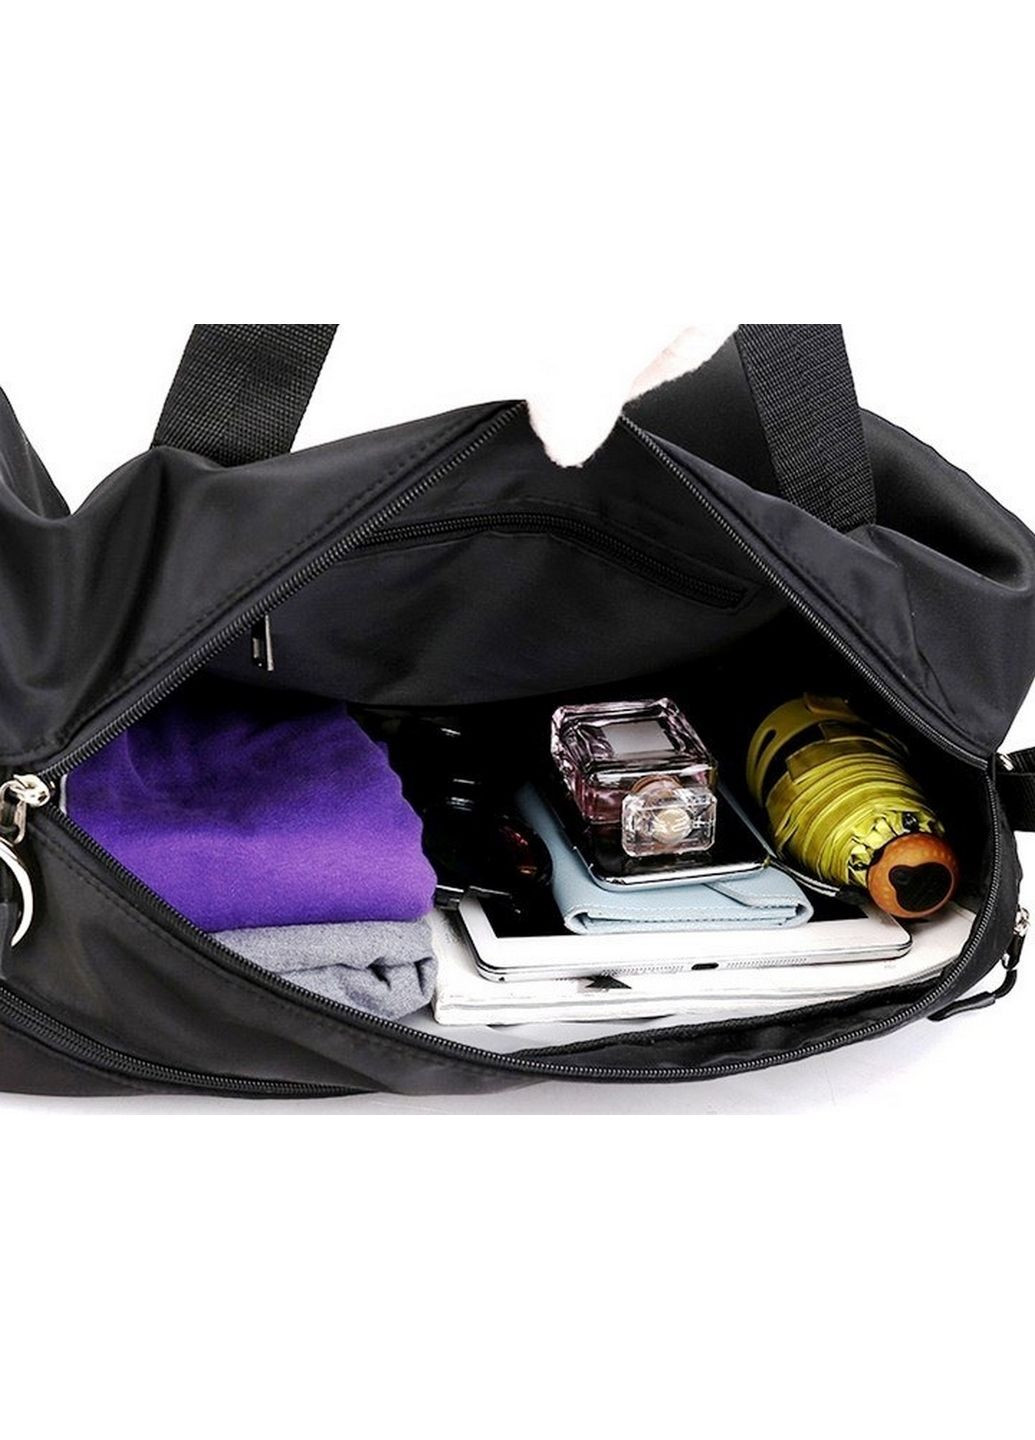 Спортивная сумка с отделами для обуви, влажных вещей 18L 40x24x18 см Edibazzar (289460426)